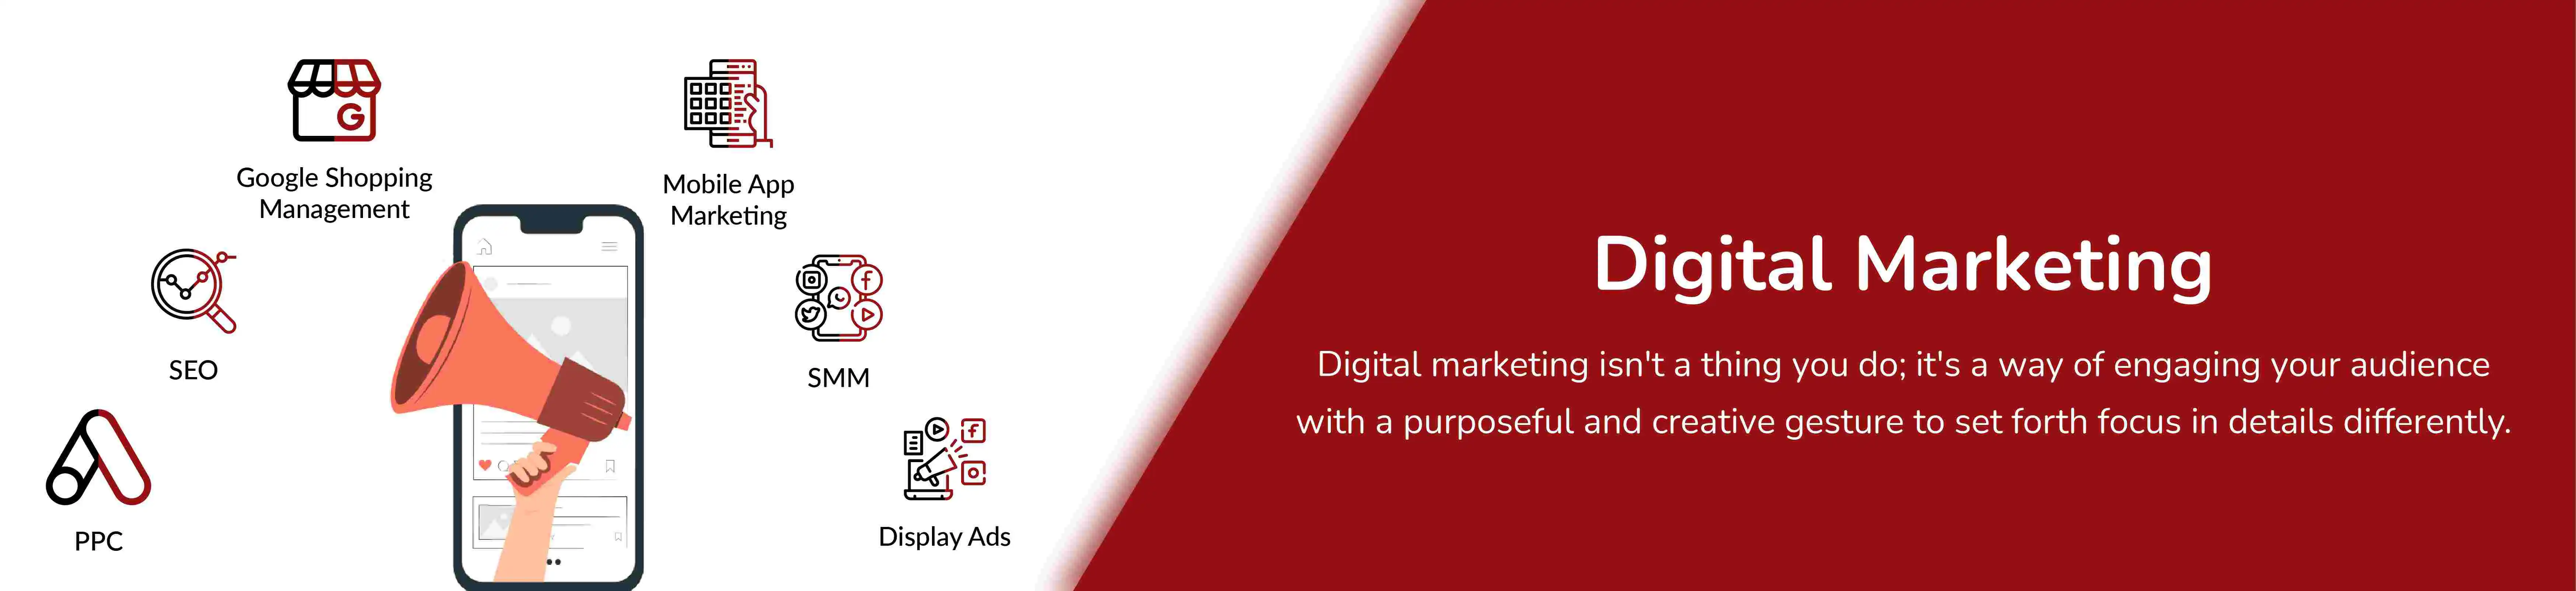 digital-marketing-banner.webp